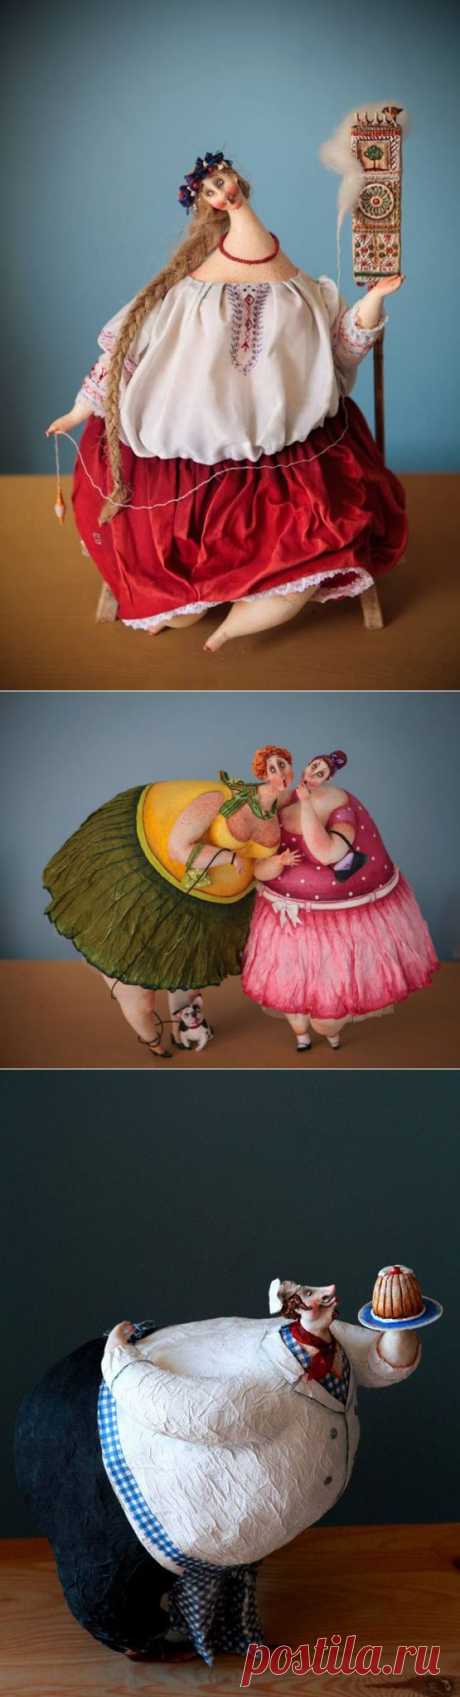 Волшебные куклы Кати Fairy-tales (Екатерины Гусевой) - Ярмарка Мастеров - ручная работа, handmade